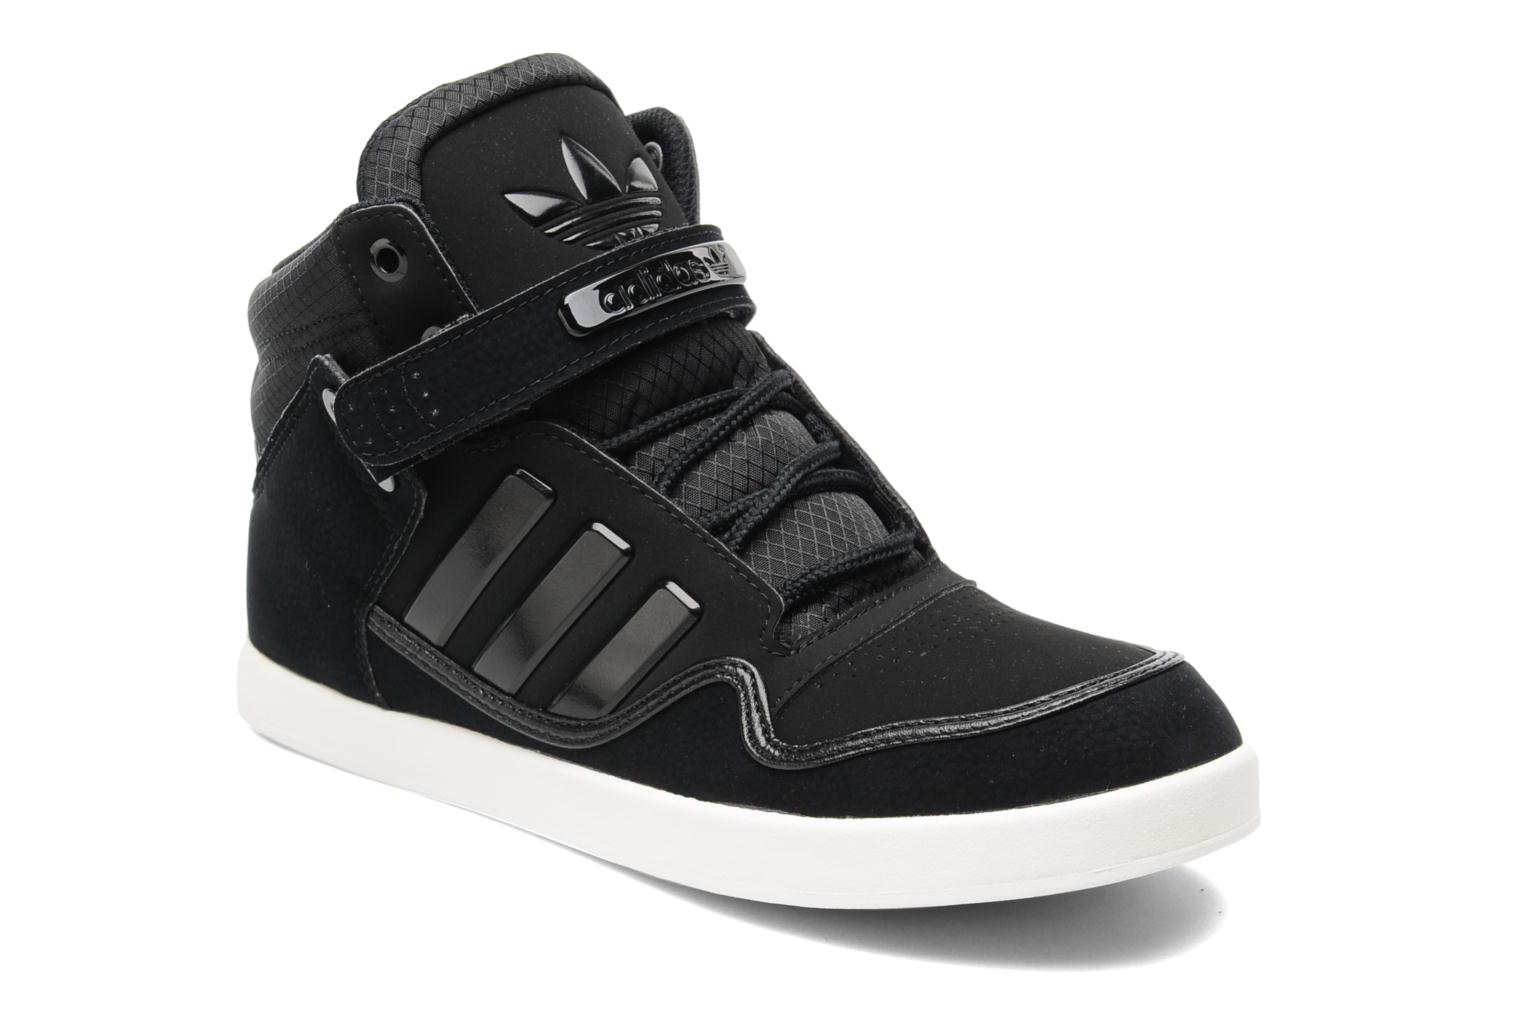 Adidas Originals AR 2.0 (Black) - Trainers chez Sarenza (143272)